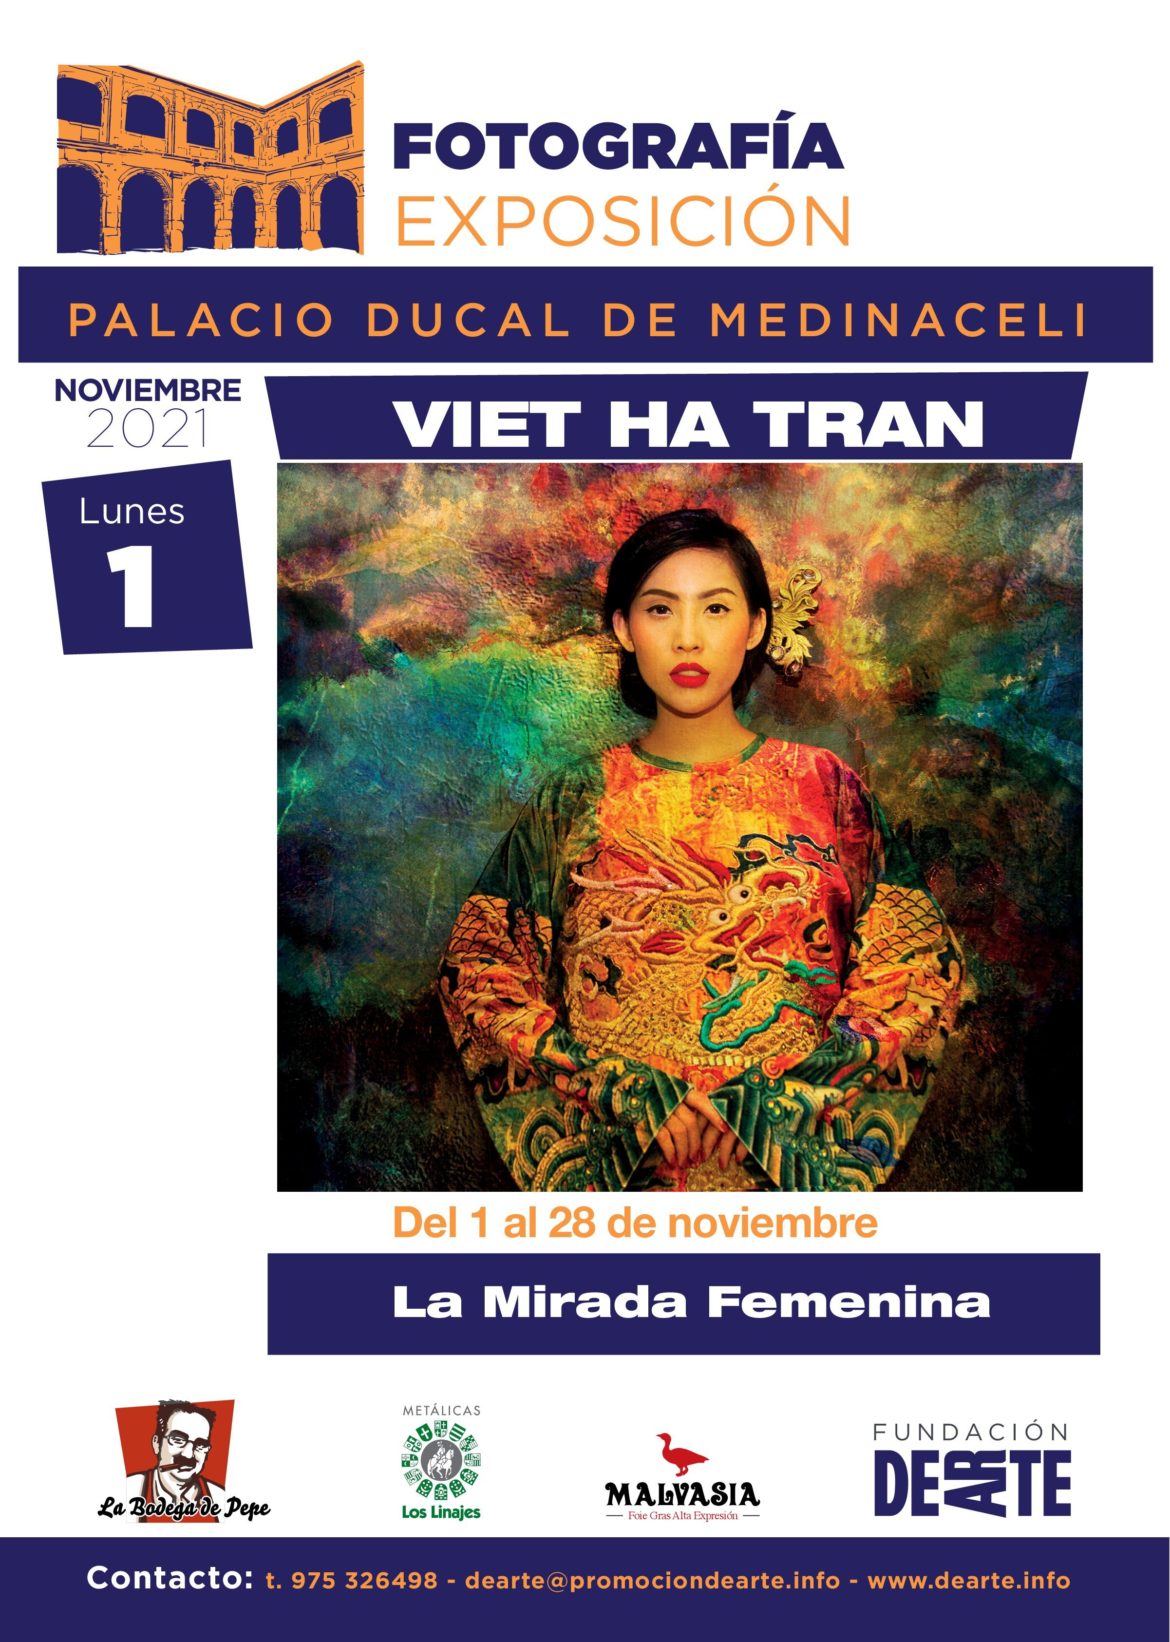 Viet Ha Tran – LA MIRADA FEMENINA en el Palacio Ducal de Medinaceli